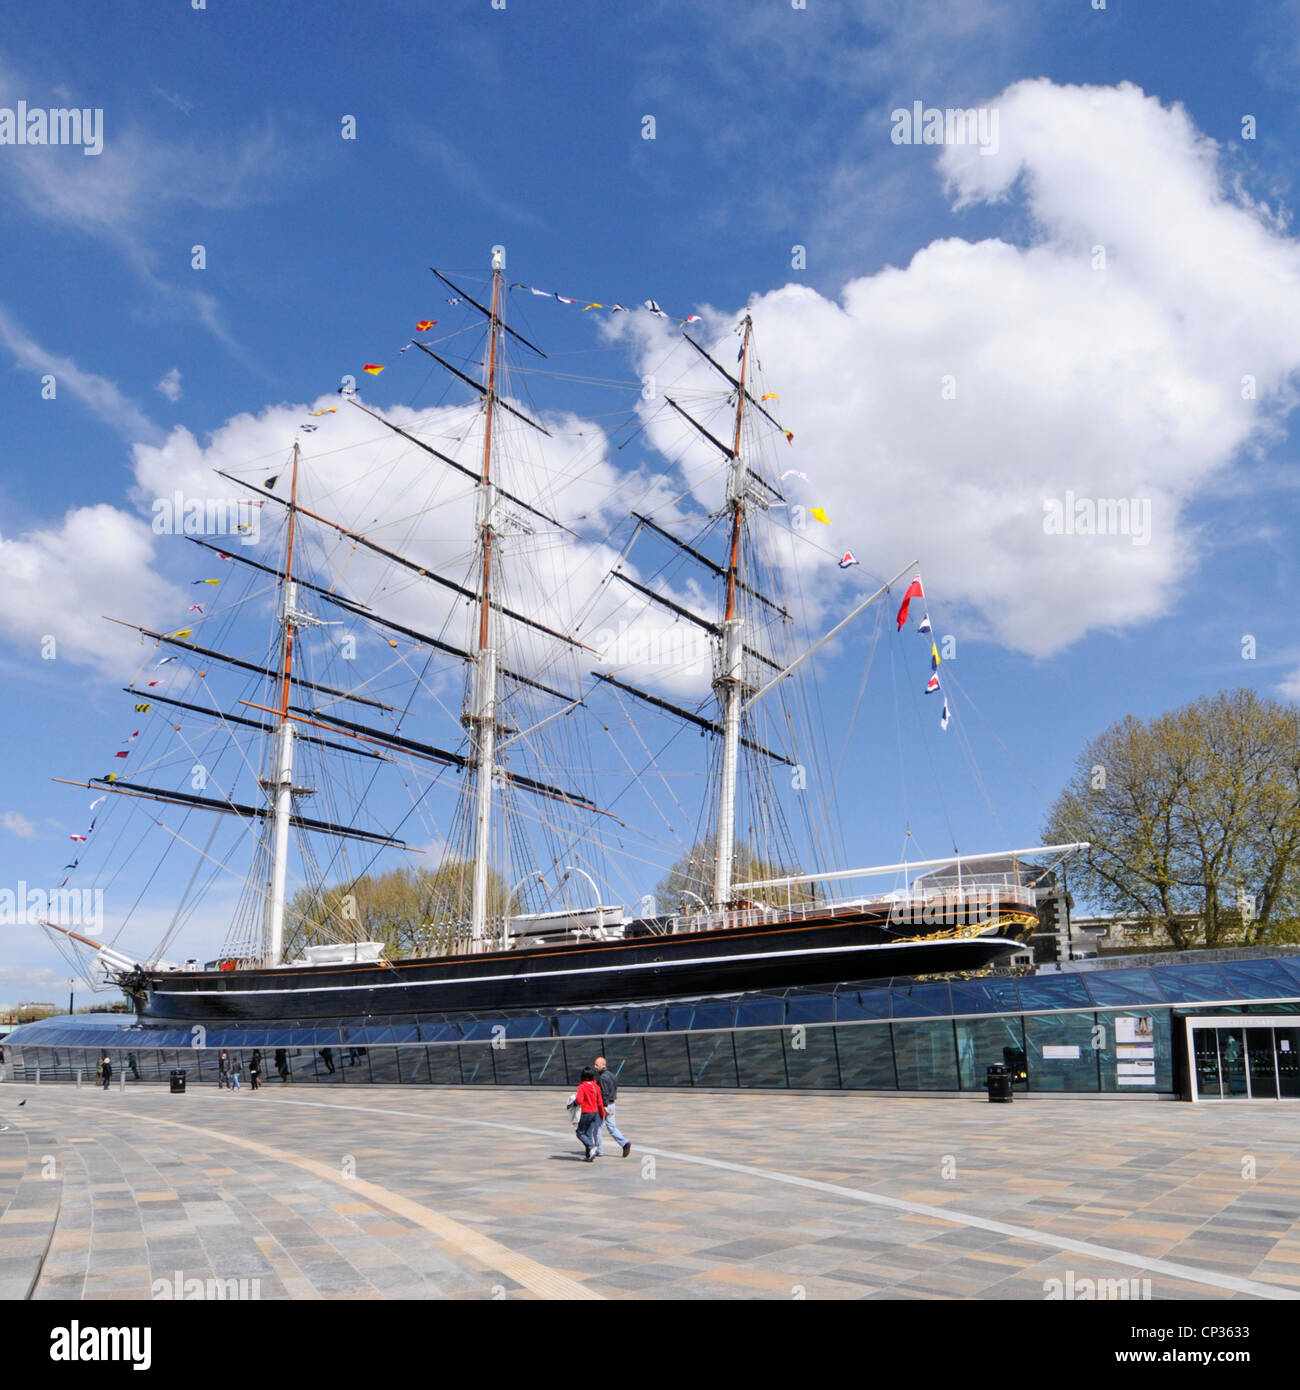 Geschichte der Cutty Sark Clipper Schiff & Museum auf dem Display Als Touristenattraktion an Bord nach der Restaurierung historische maritime Stadt Greenwich London, Großbritannien Stockfoto